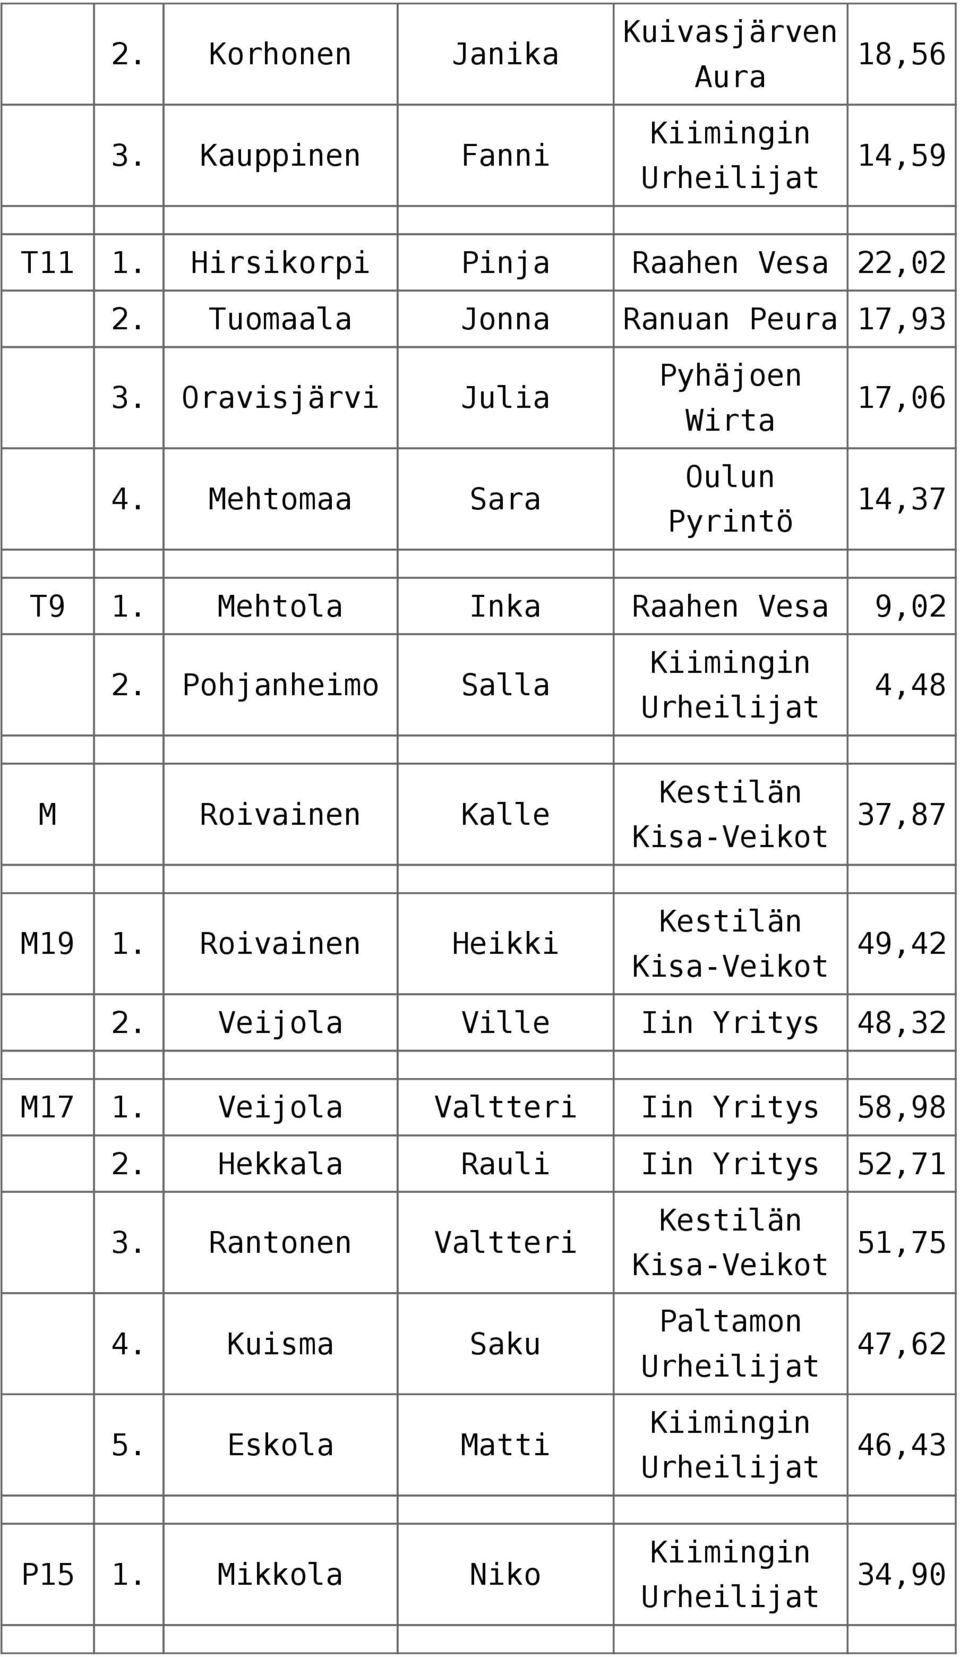 Mehtola Inka Raahen Vesa 9,02 2. Pohjanheimo Salla 4,48 M Roivainen Kalle 37,87 M19 1. Roivainen Heikki 49,42 2.